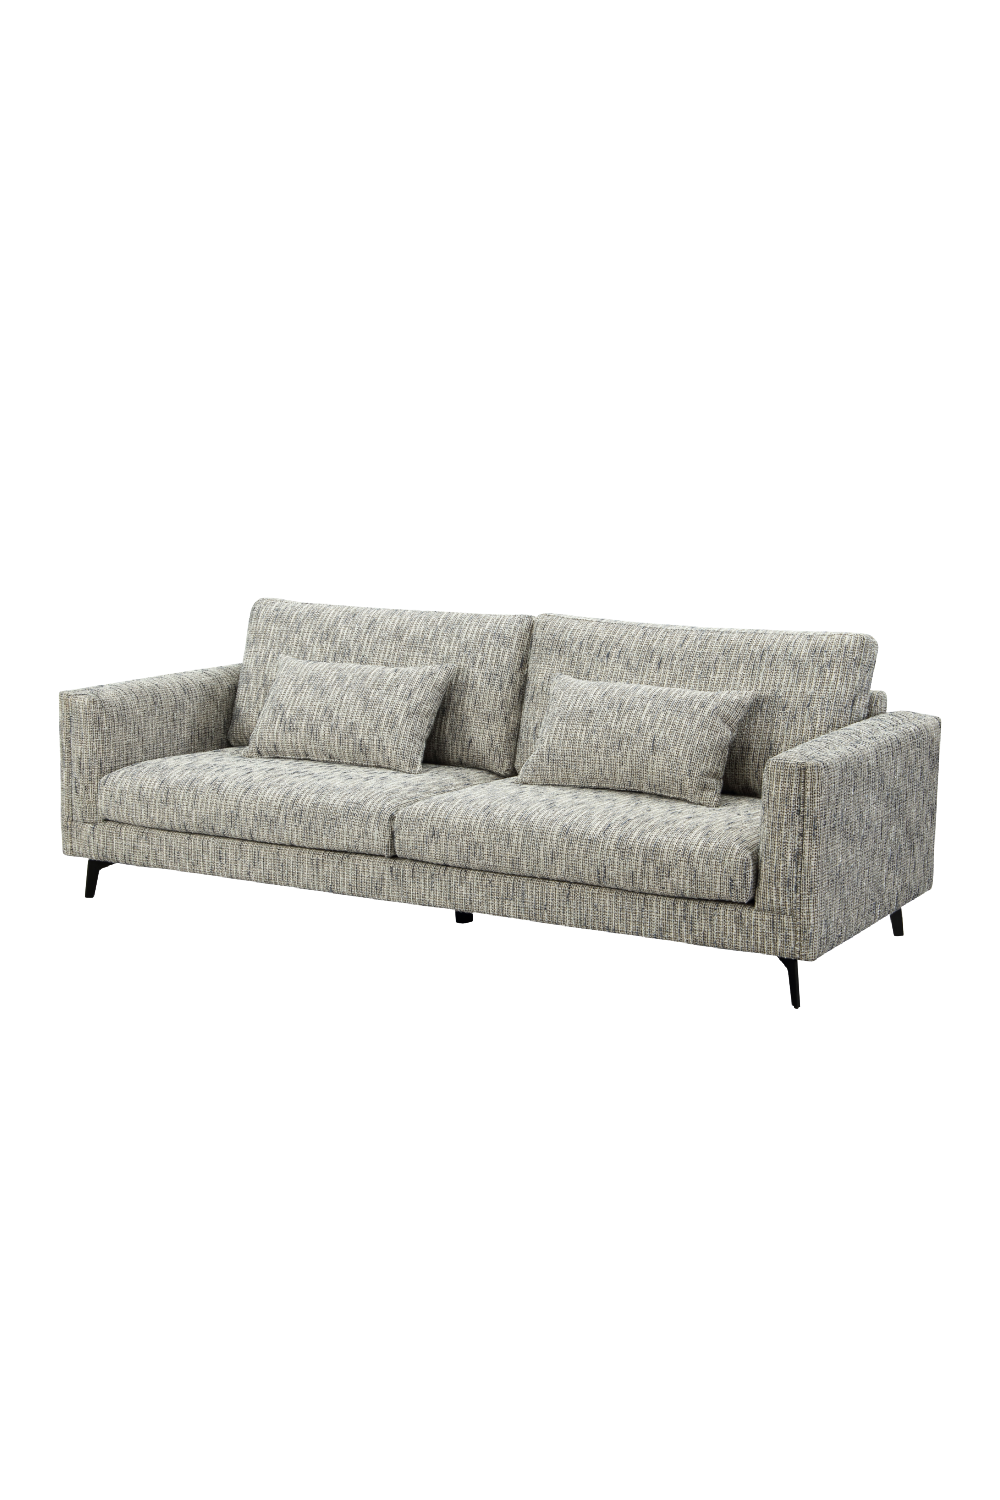 Upholstered Contemporary Sofa | Liang & Eimil Bennett | Oroa.com